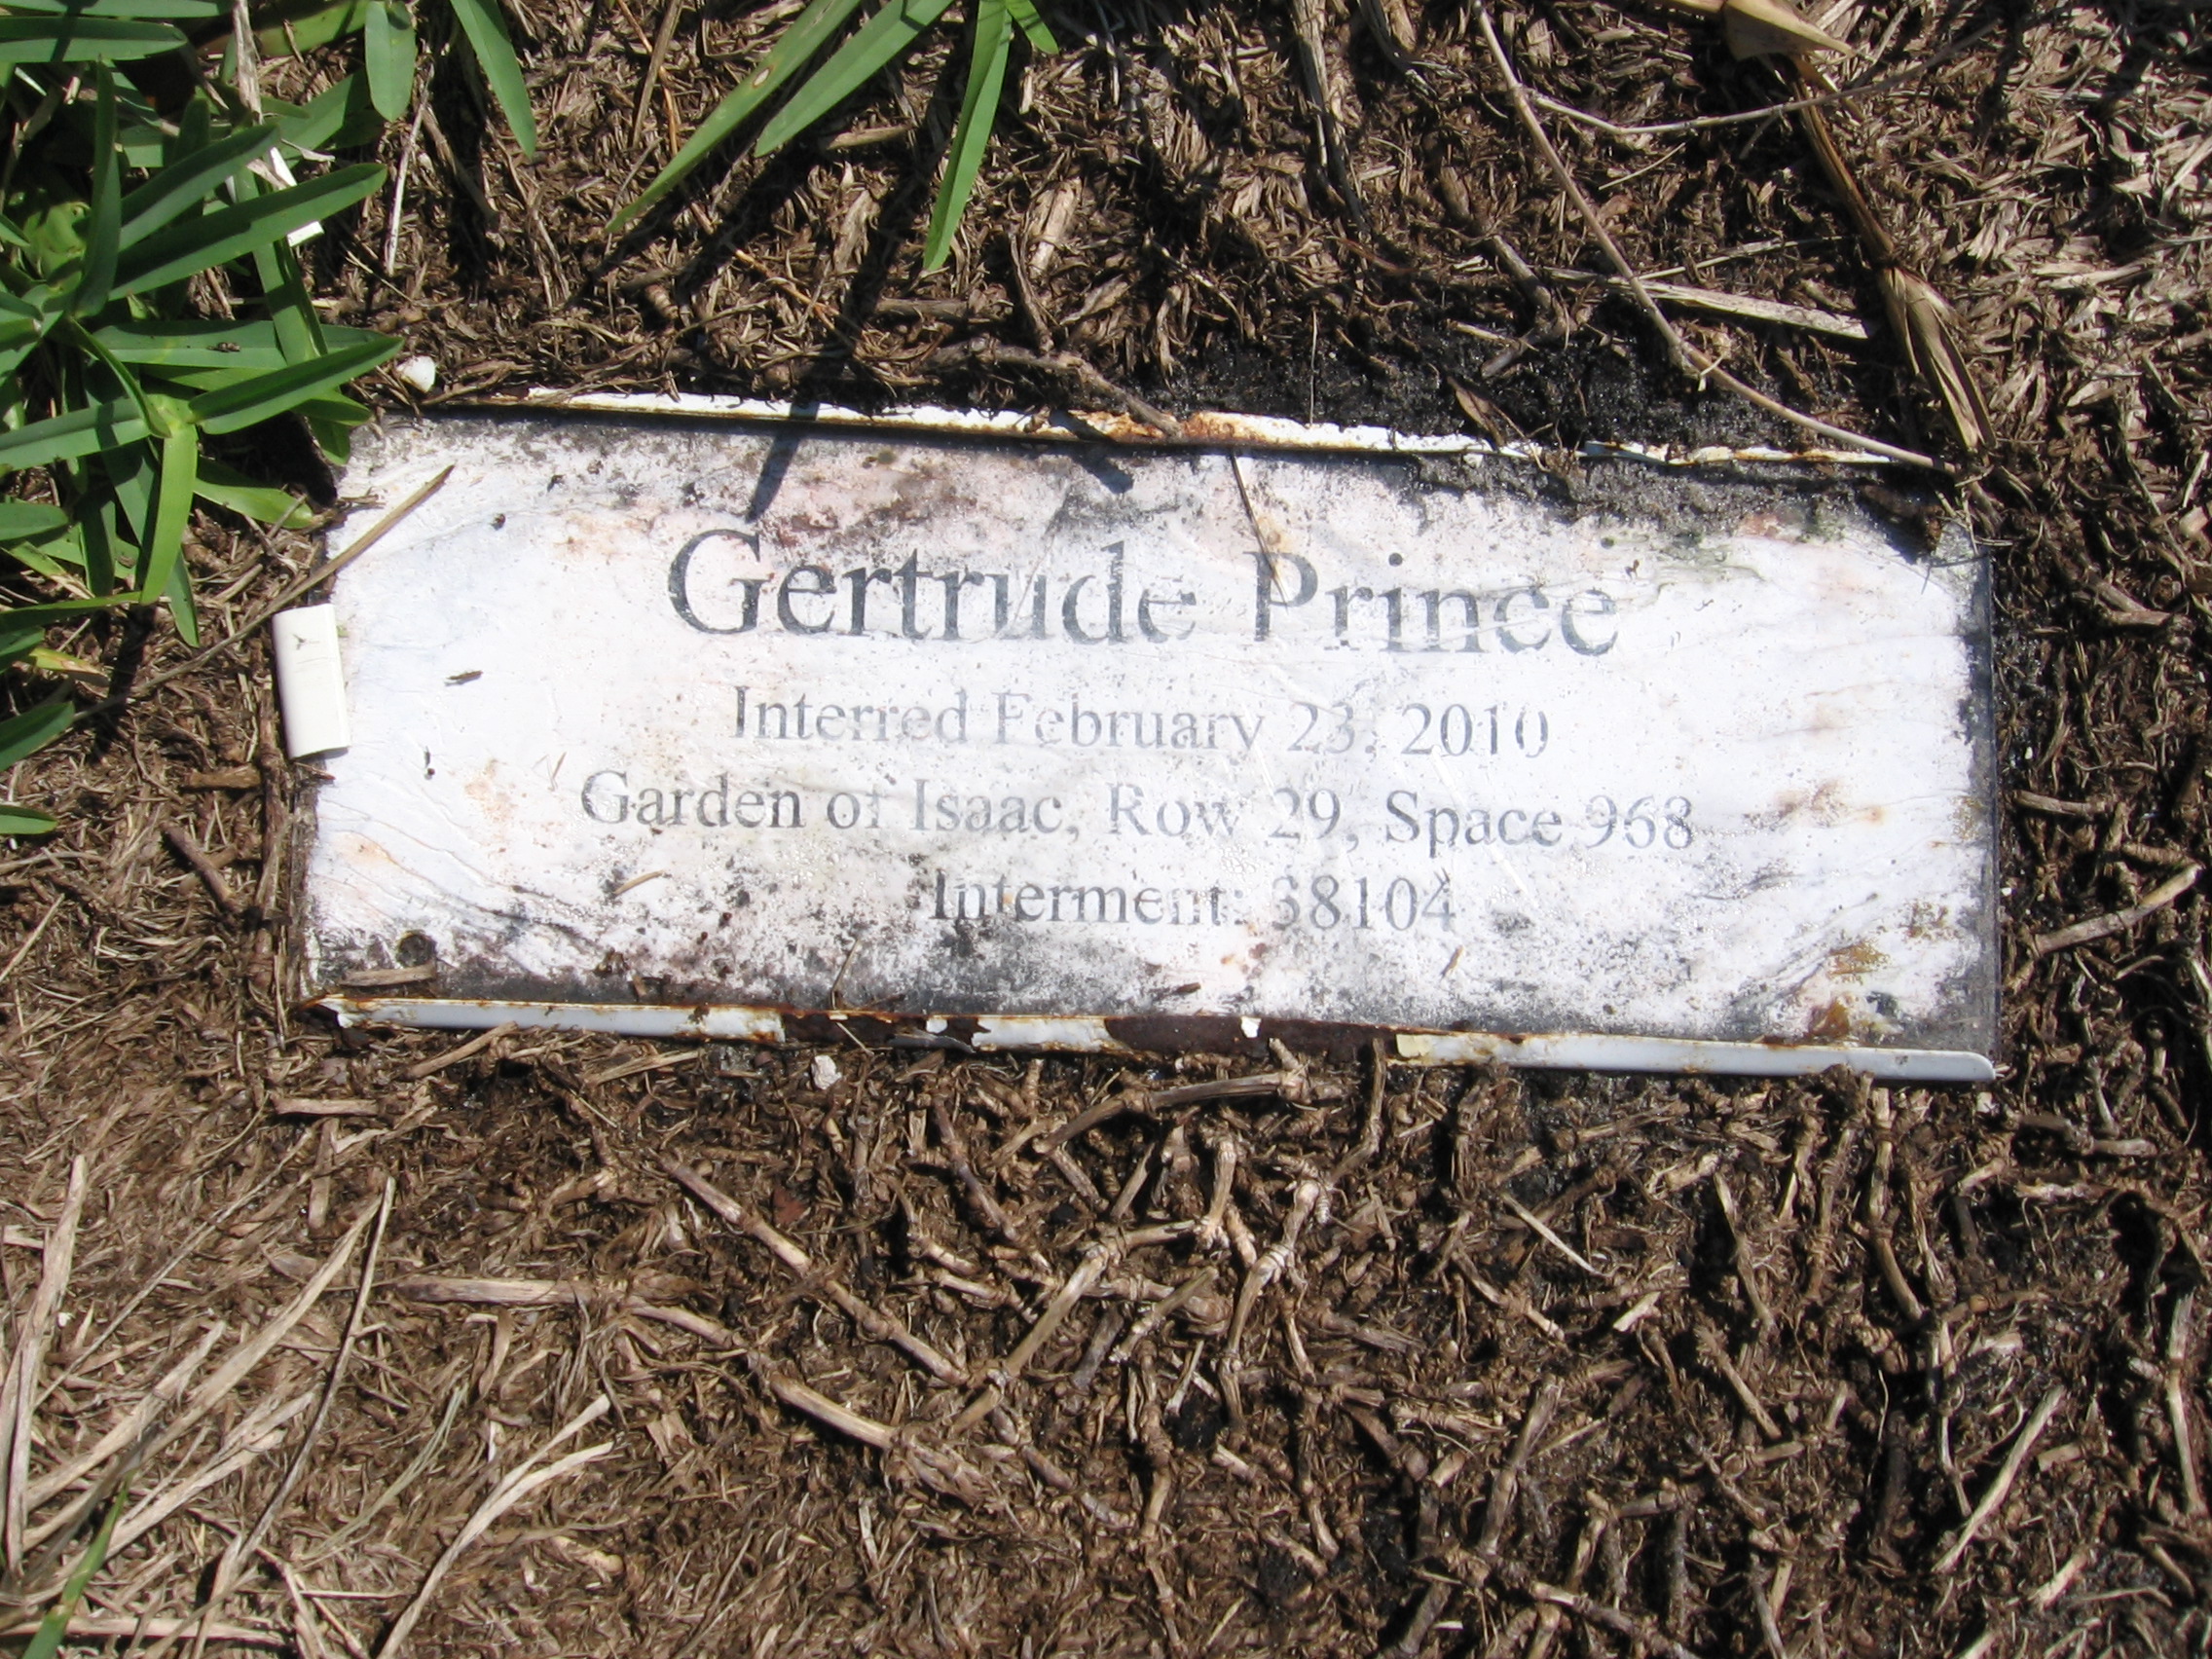 Gertrude Prince